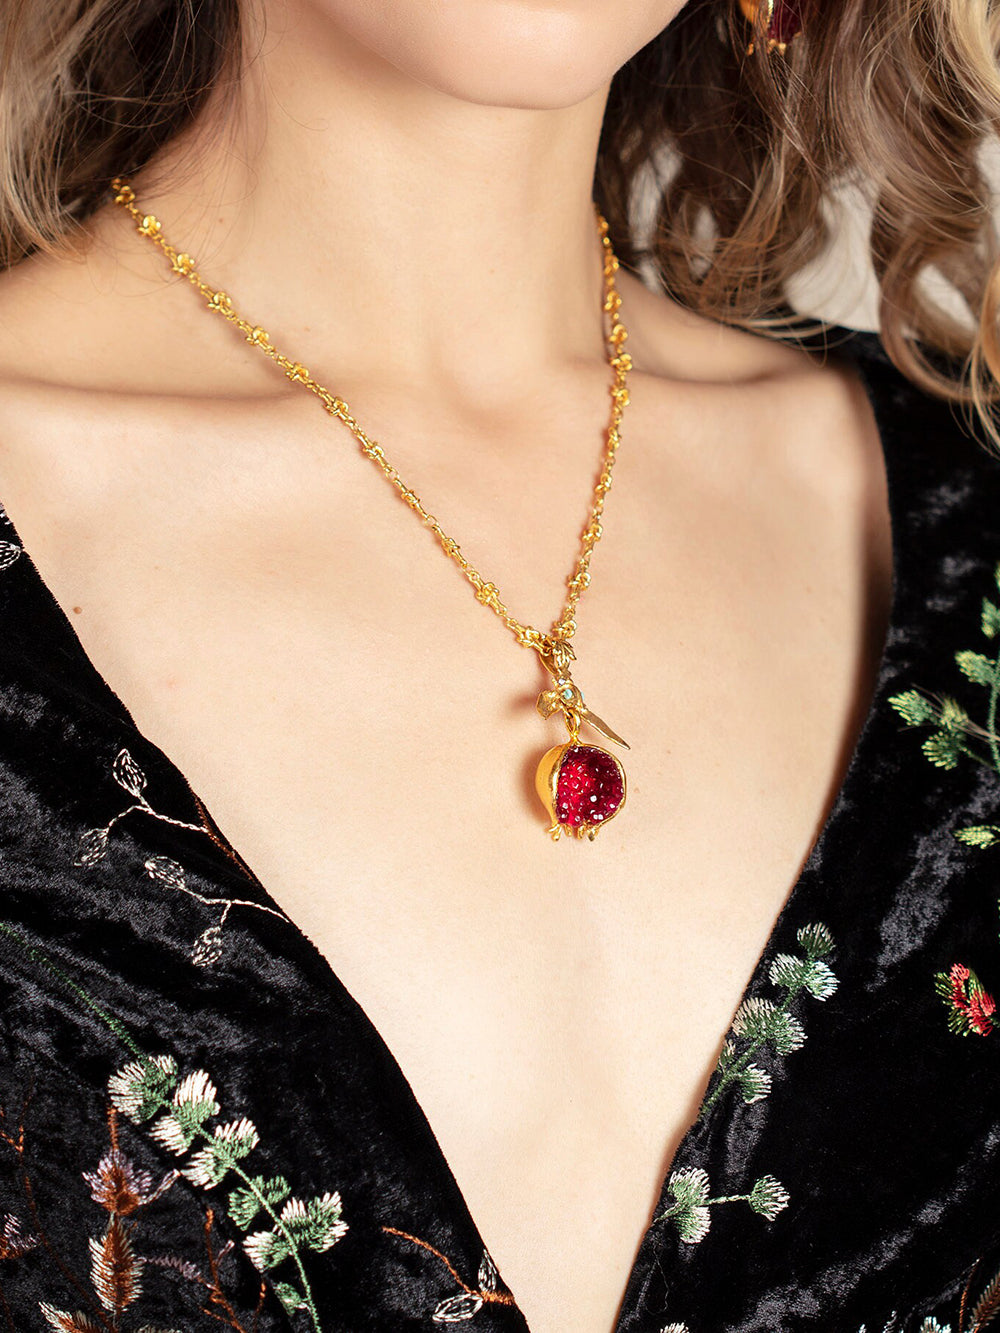 Turecký zlatý náhrdelník s designem granátového jablka